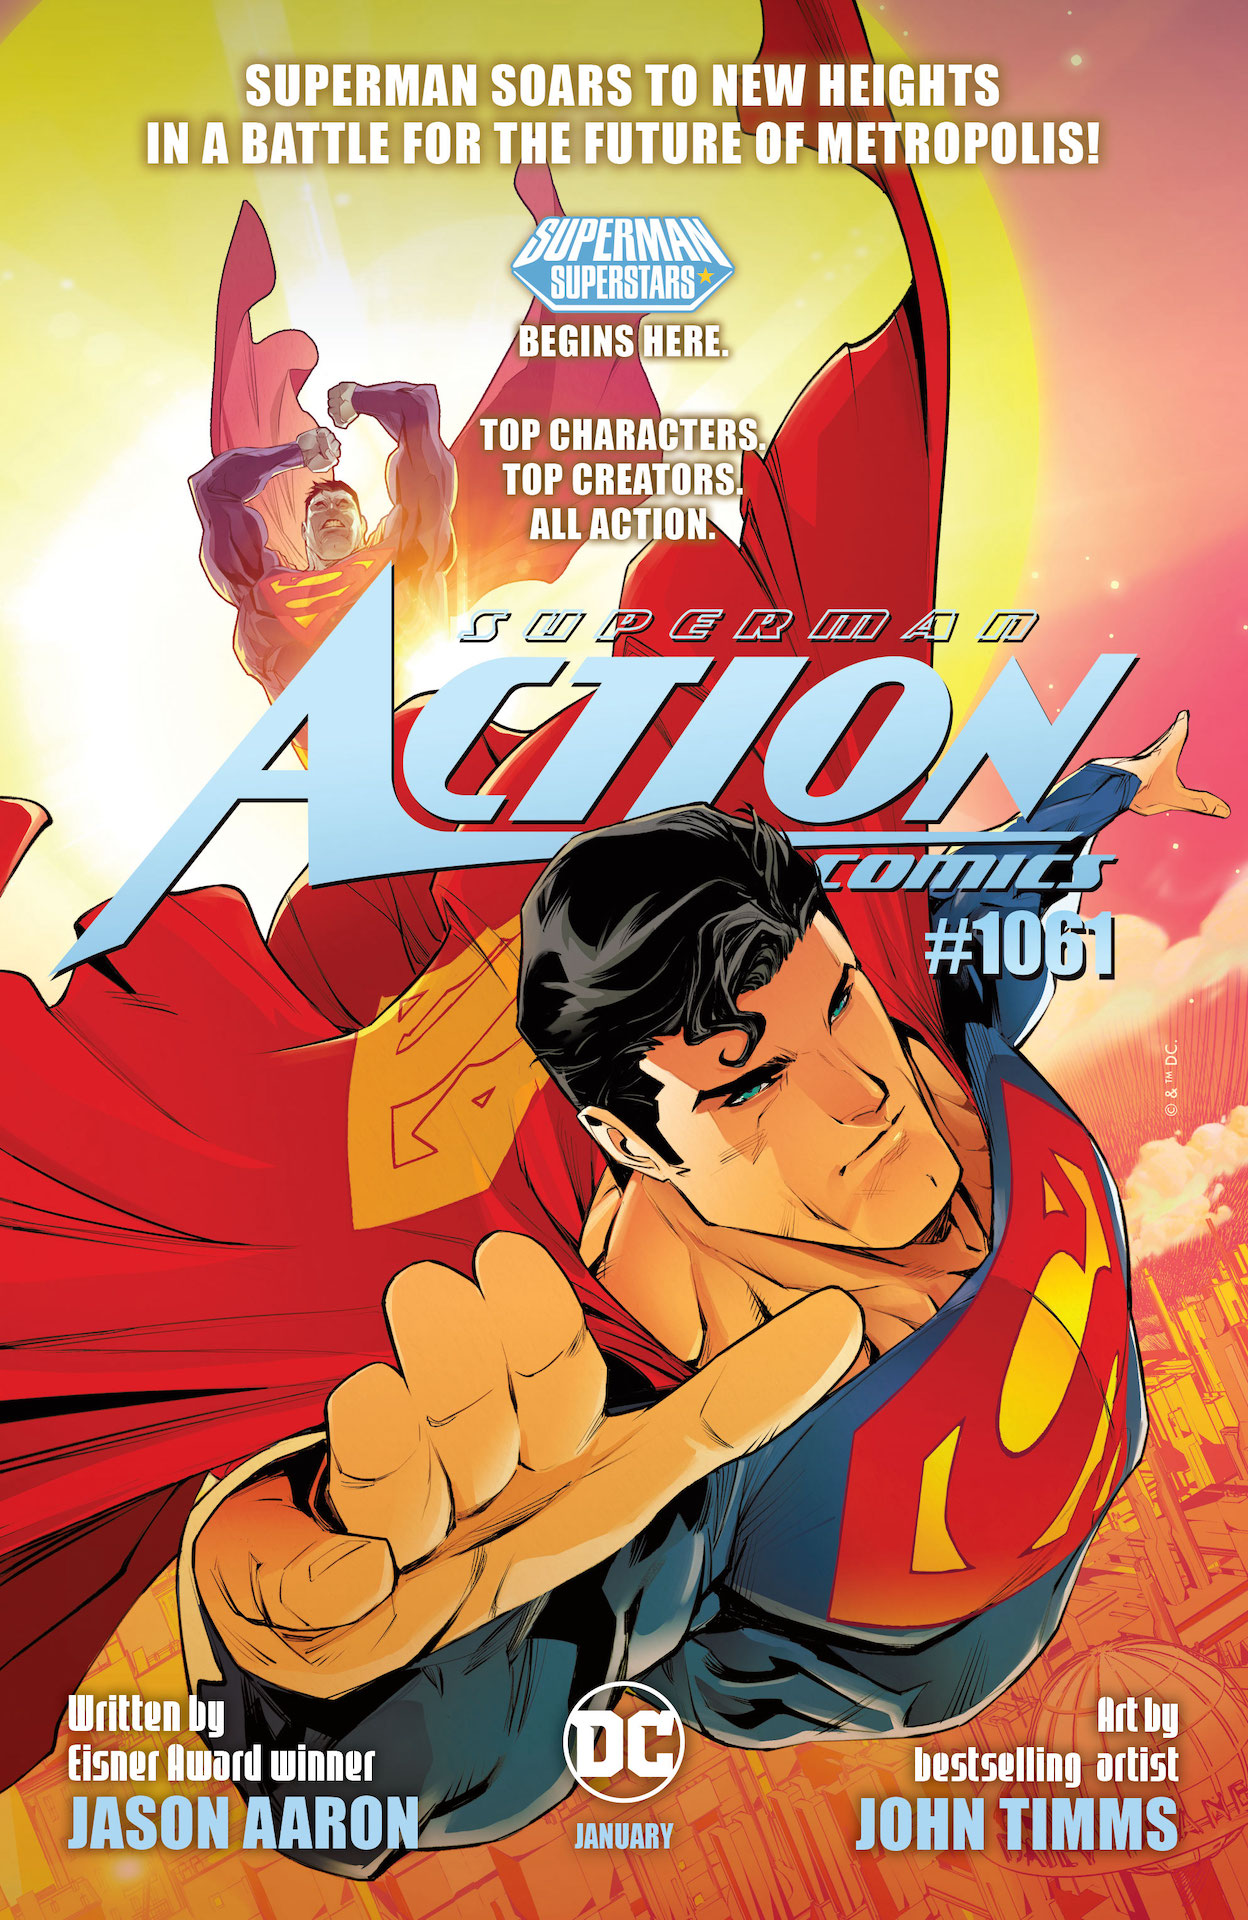 DC Preview: Action Comics #1061